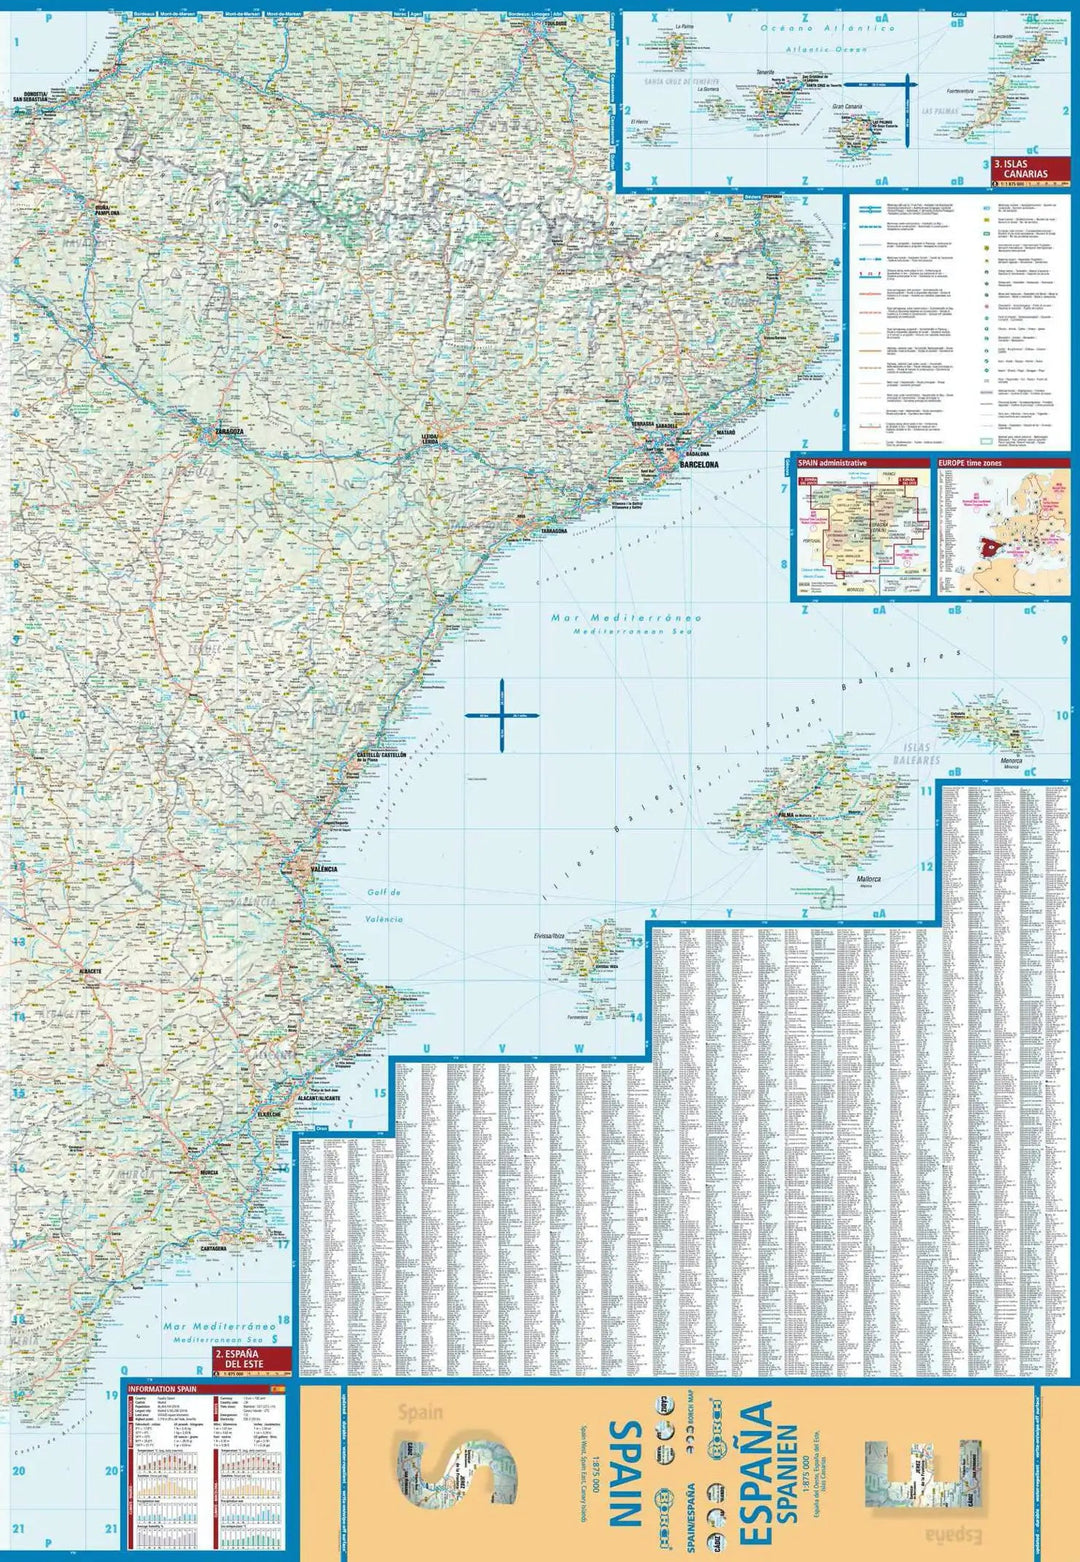 Carte routière plastifiée - Espagne | Borch Map carte pliée Borch Map 